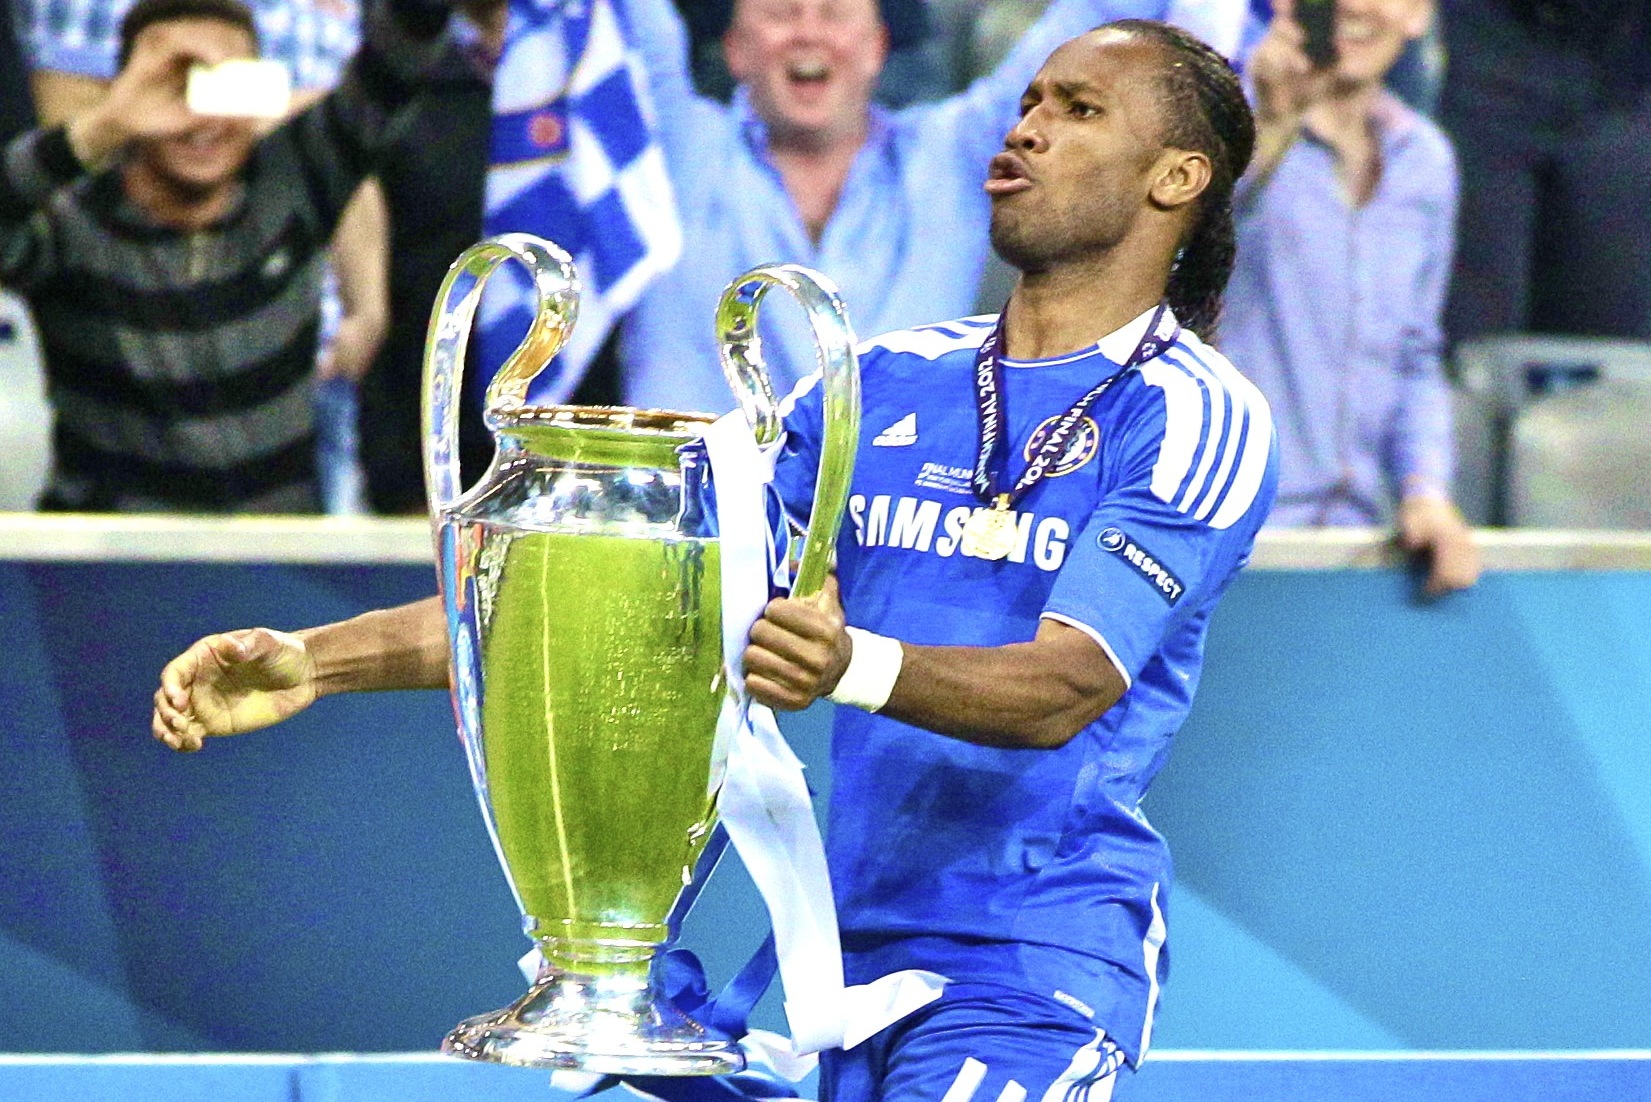 Didier Drogba inspire ce jeune joueur à rêver de jouer pour Chelsea